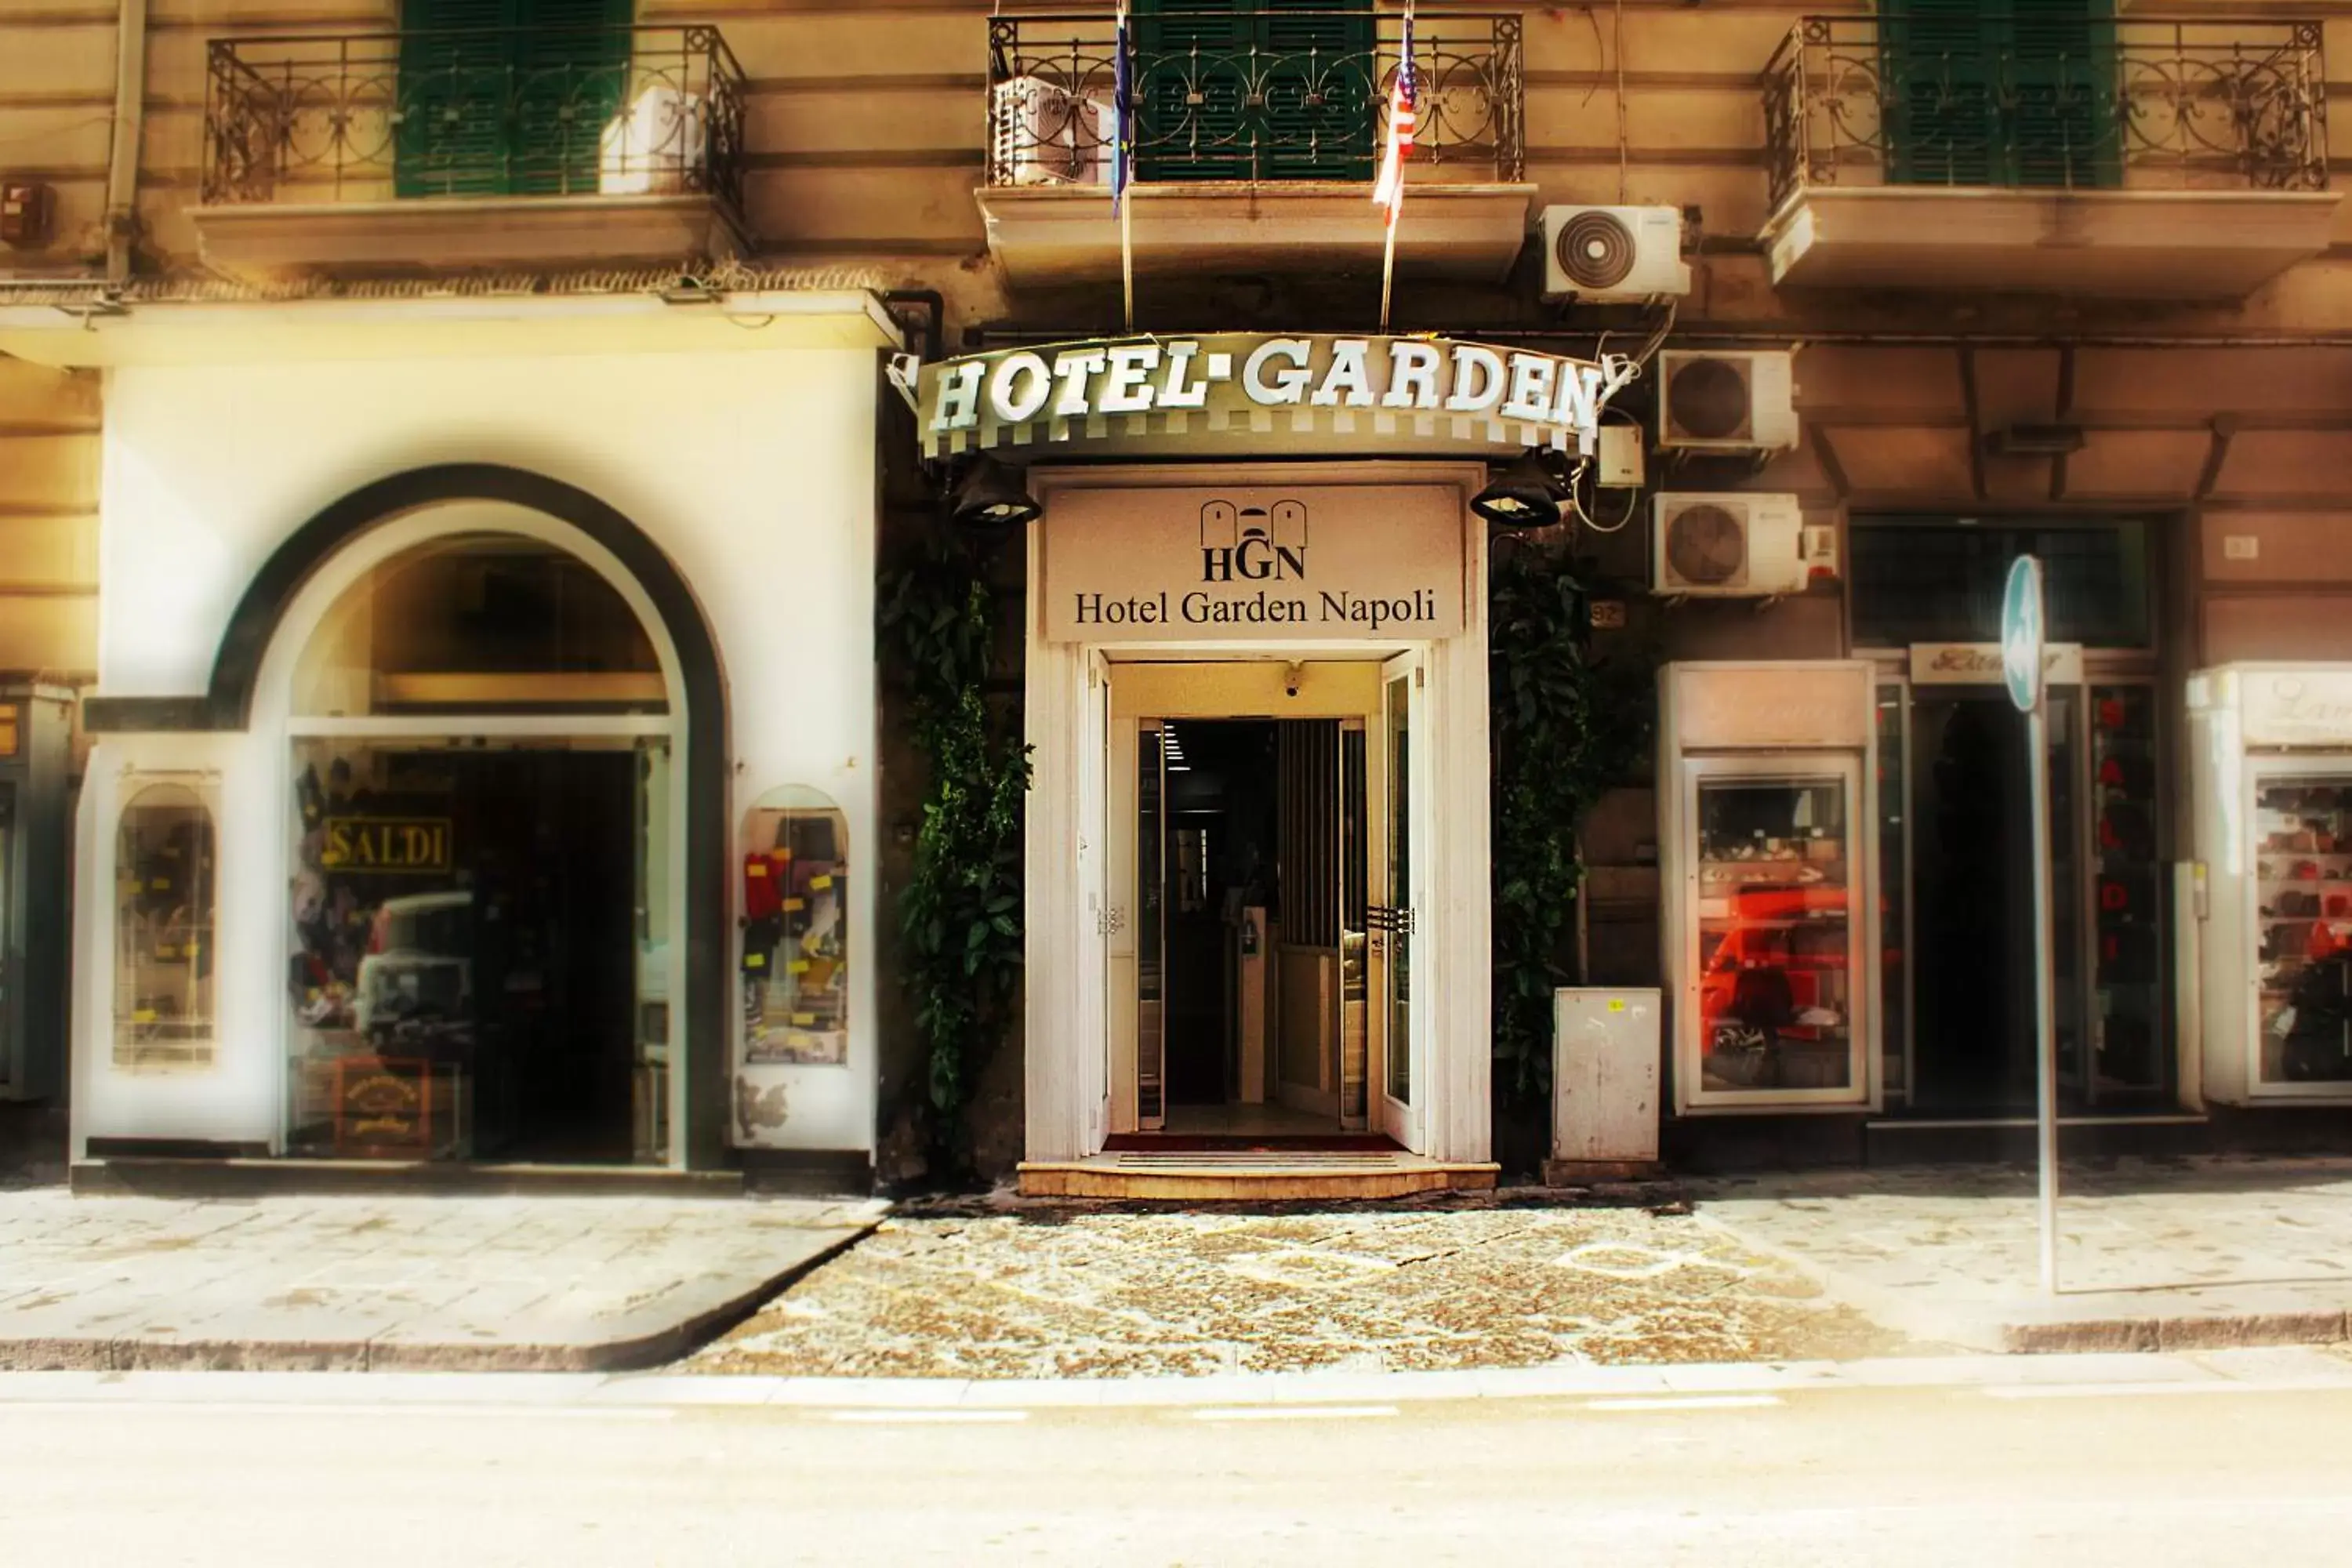 Facade/entrance in Hotel Garden Napoli